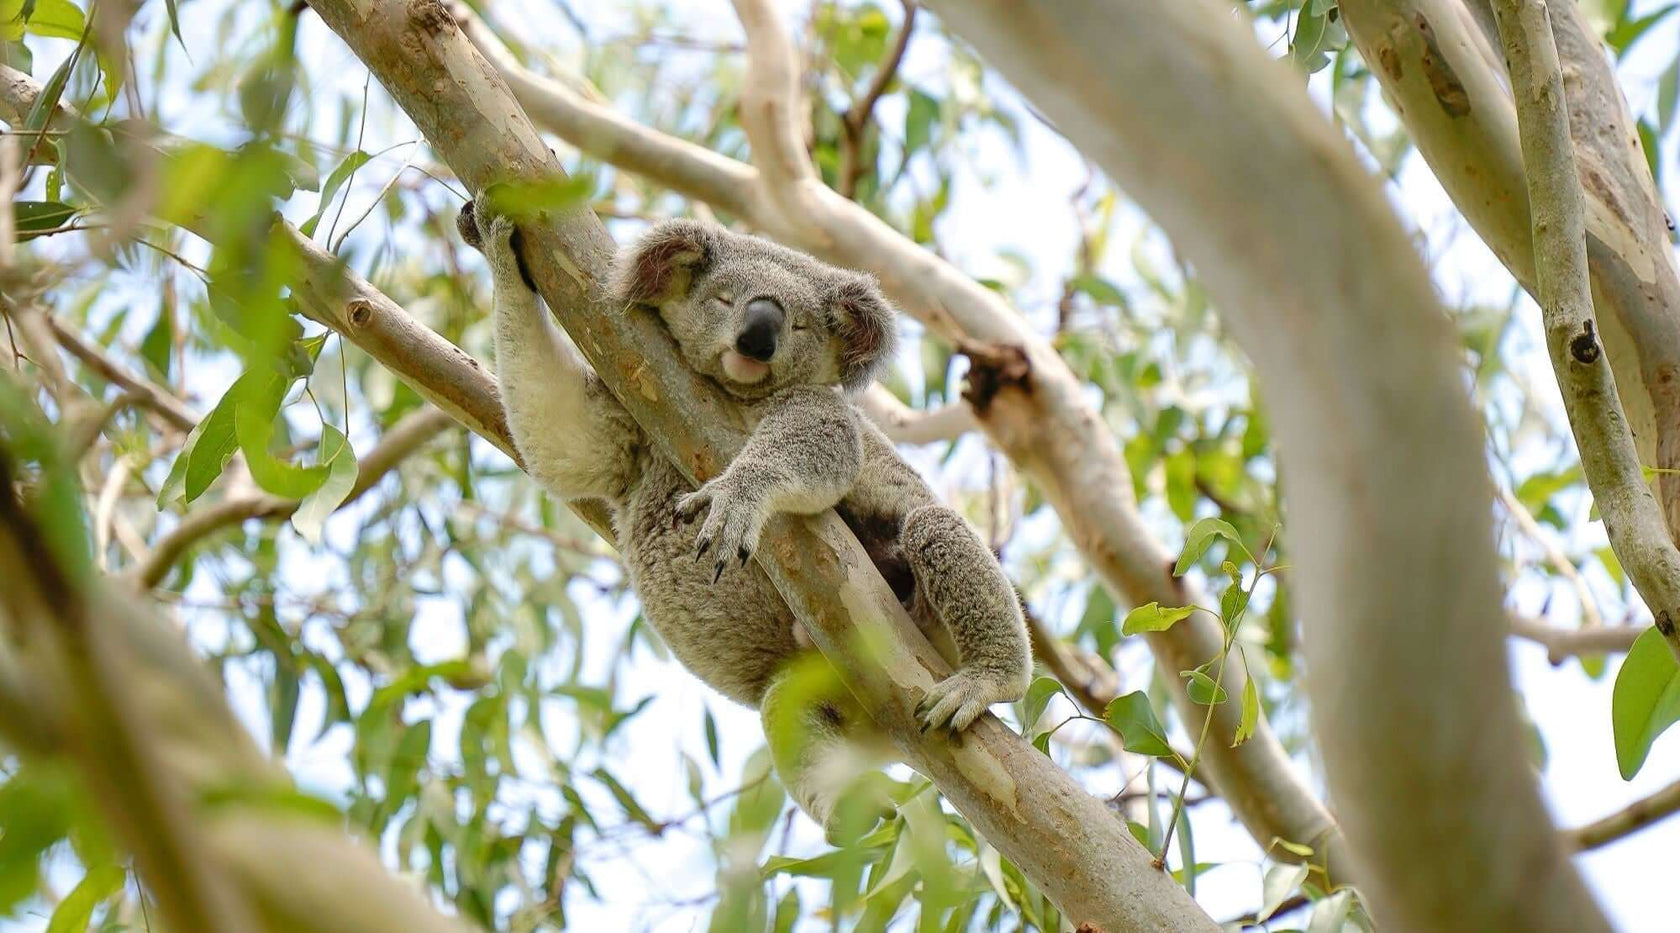 Koala asleep in eucalypt tree in Greenfleet forest in Noosa QLD